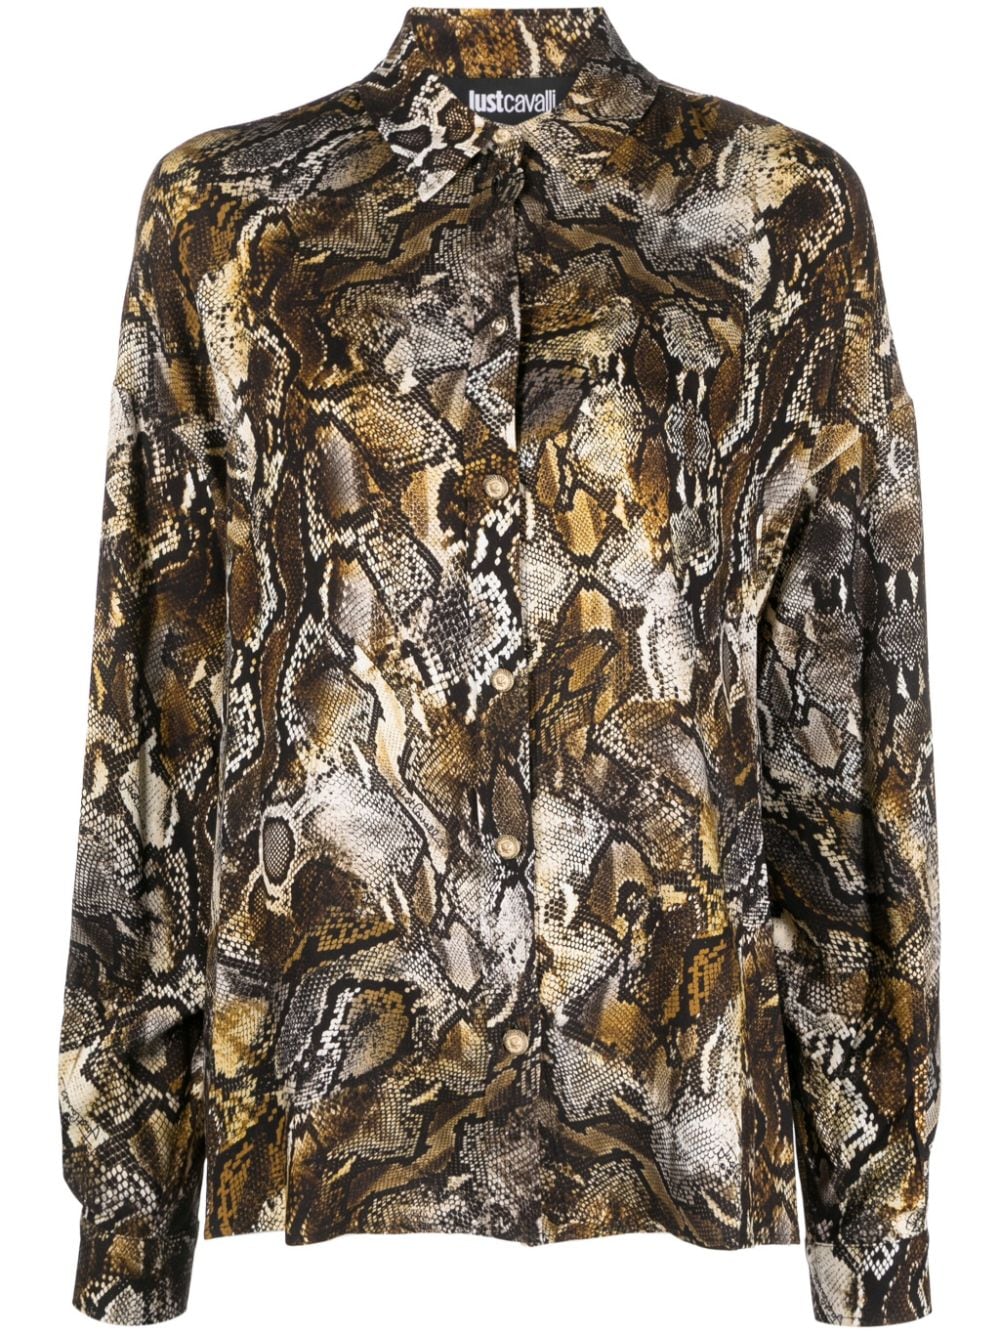 Just Cavalli python-print long-sleeves shirt - Neutrals von Just Cavalli